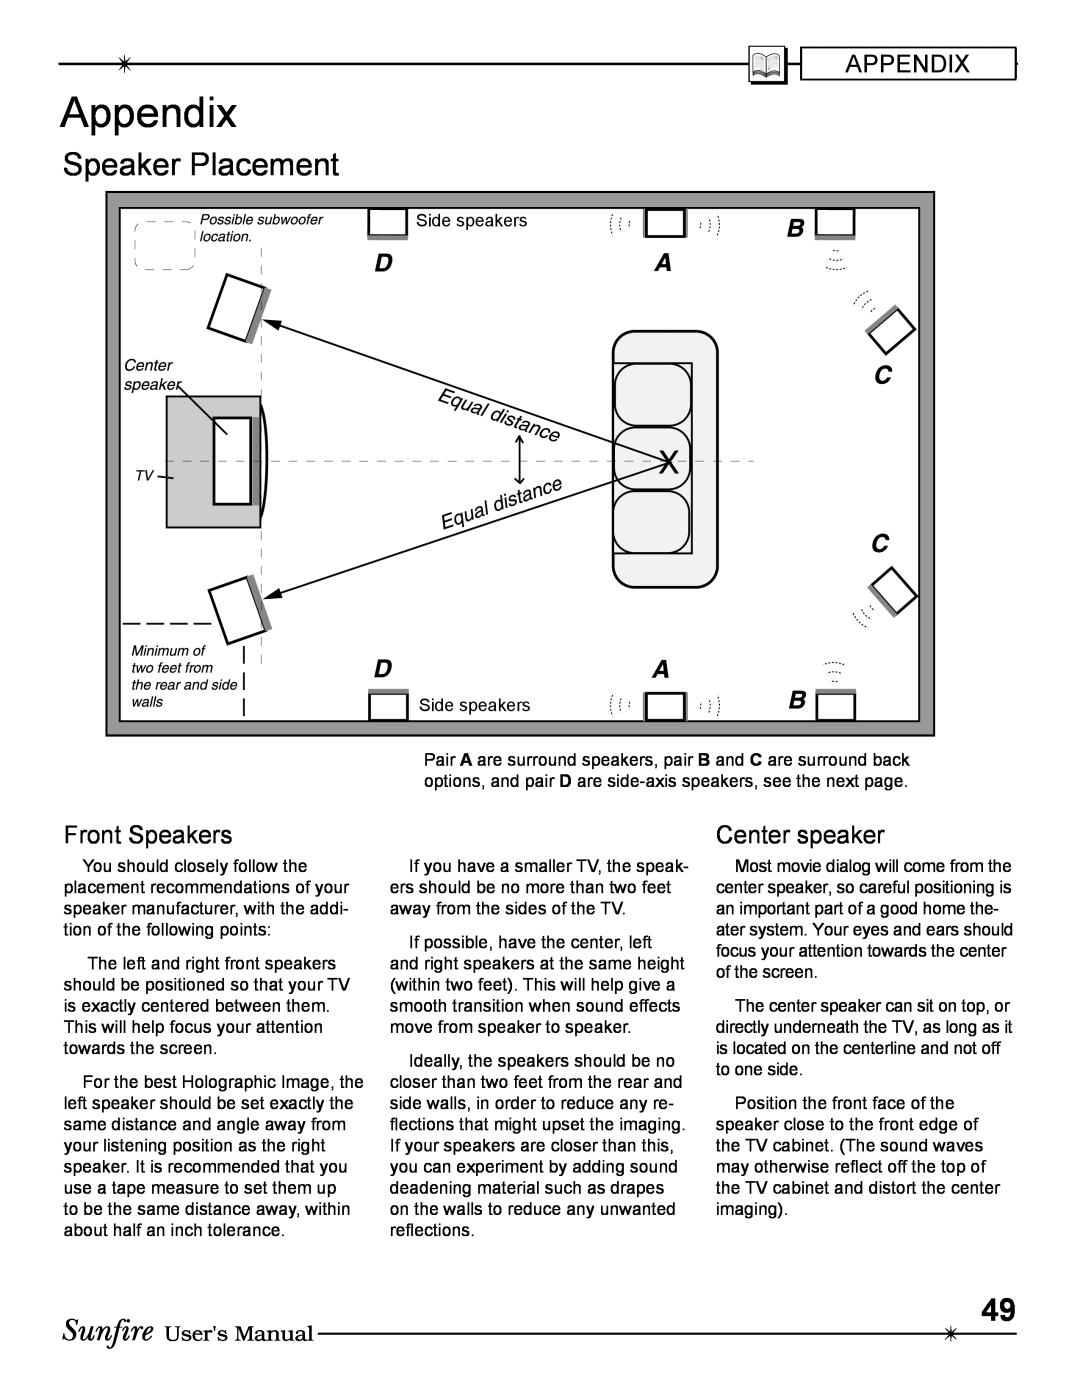 Sunfire Radio manual Appendix, Speaker Placement 